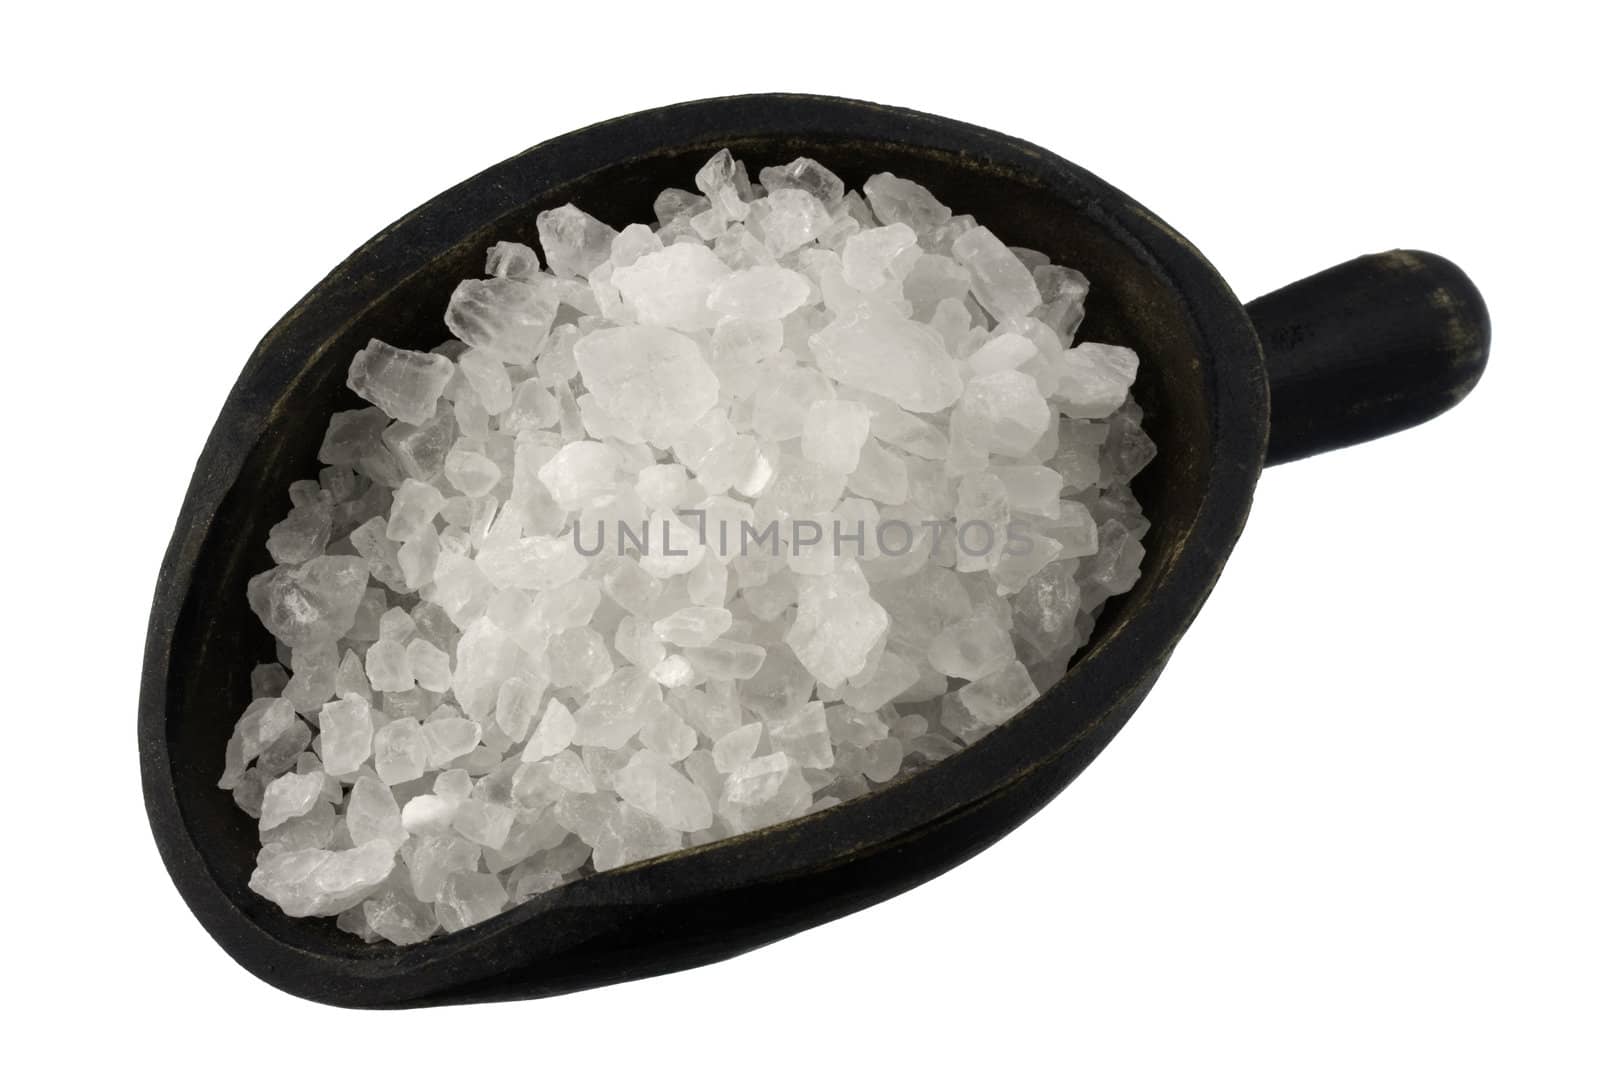 scoop of rock salt by PixelsAway